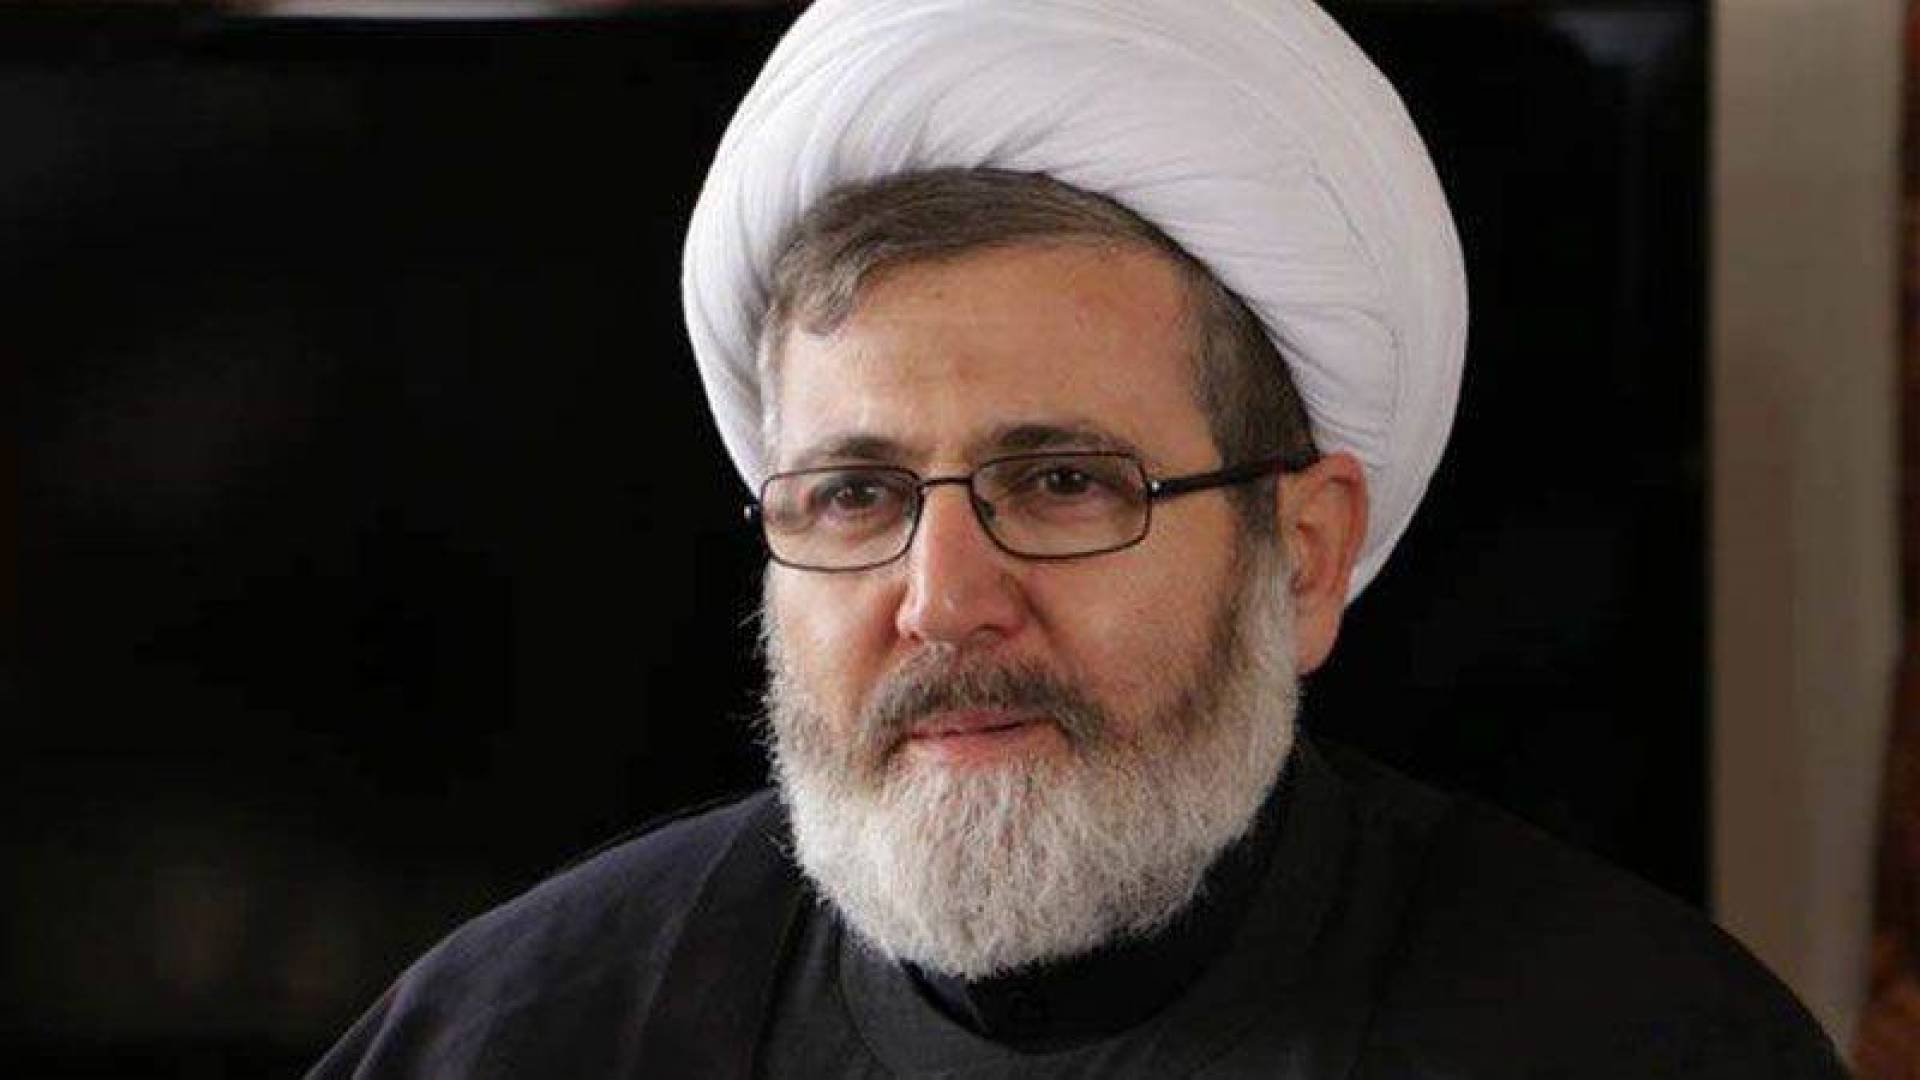 الشيخ البغدادي: ردّ حزب الله على الكيان المؤقت مرتبط بحجم العدوان وهو جزء من معادلة الردع.